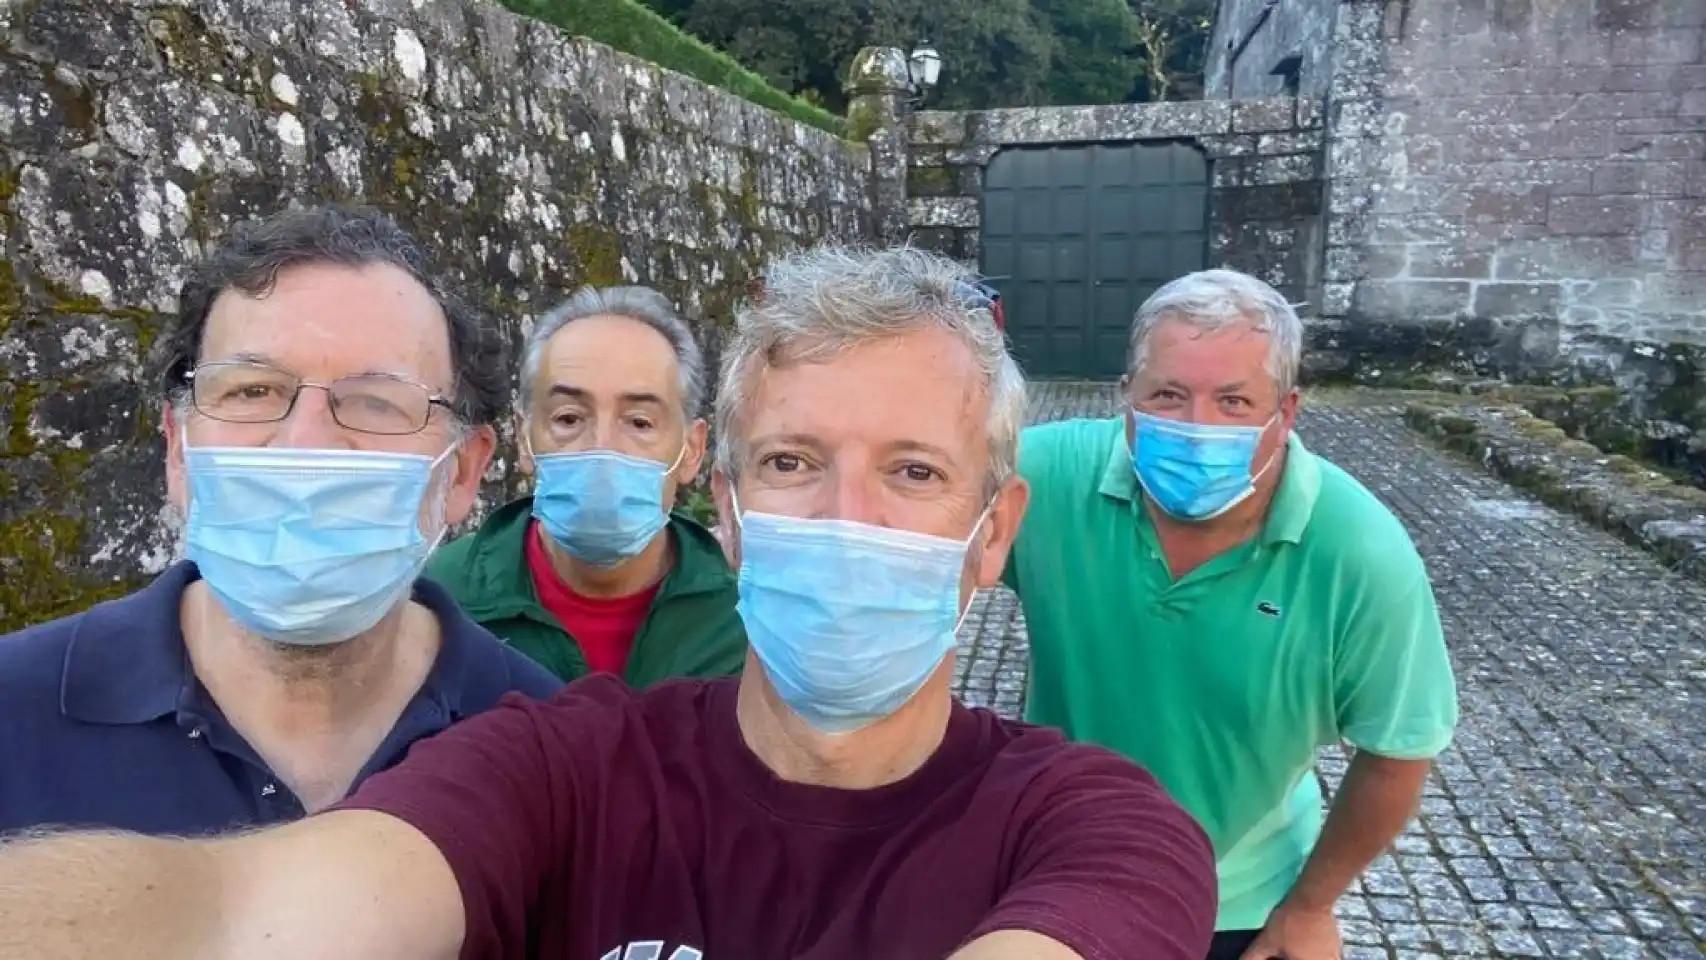 Alfonso Rueda toma un selfie junto al expresidente Mariano Rajoy, José Benito y otro amigo, tras una caminata durante la pandemia.